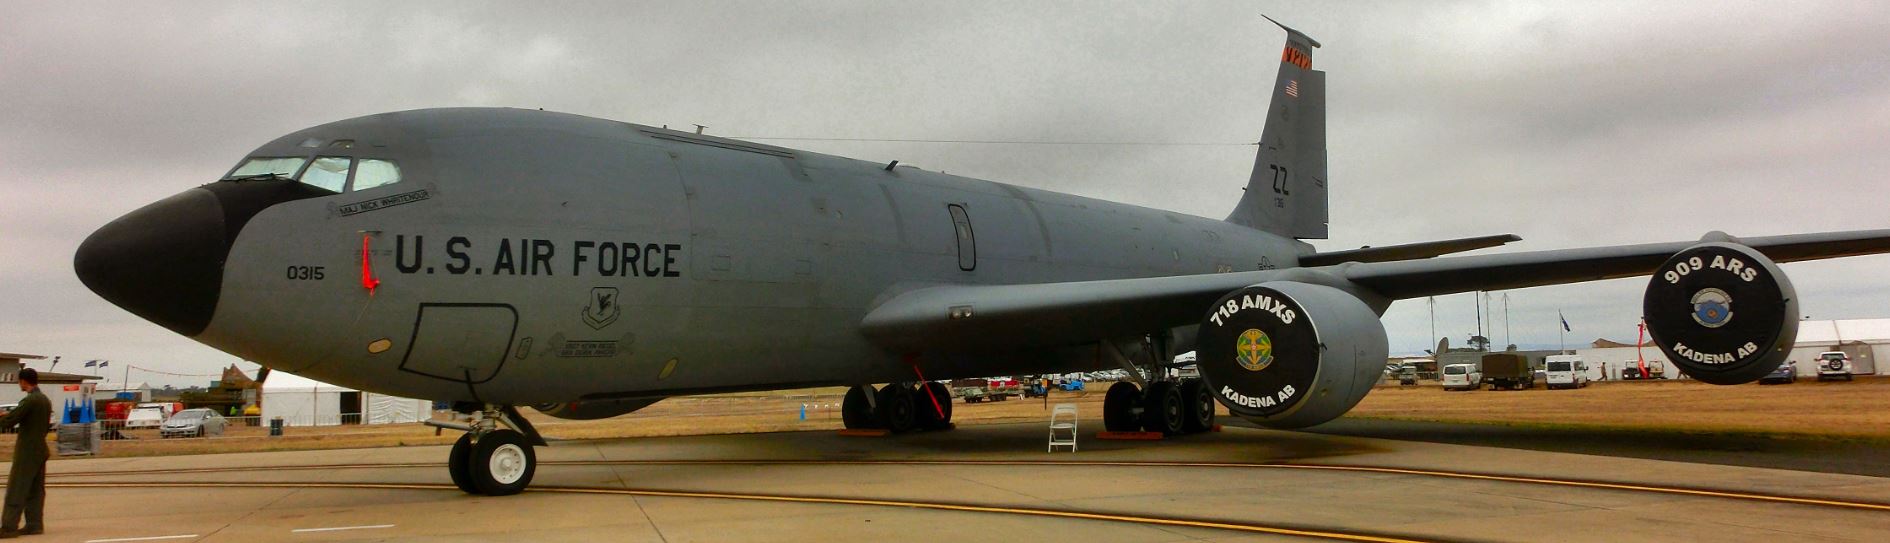 KC-135 tanker